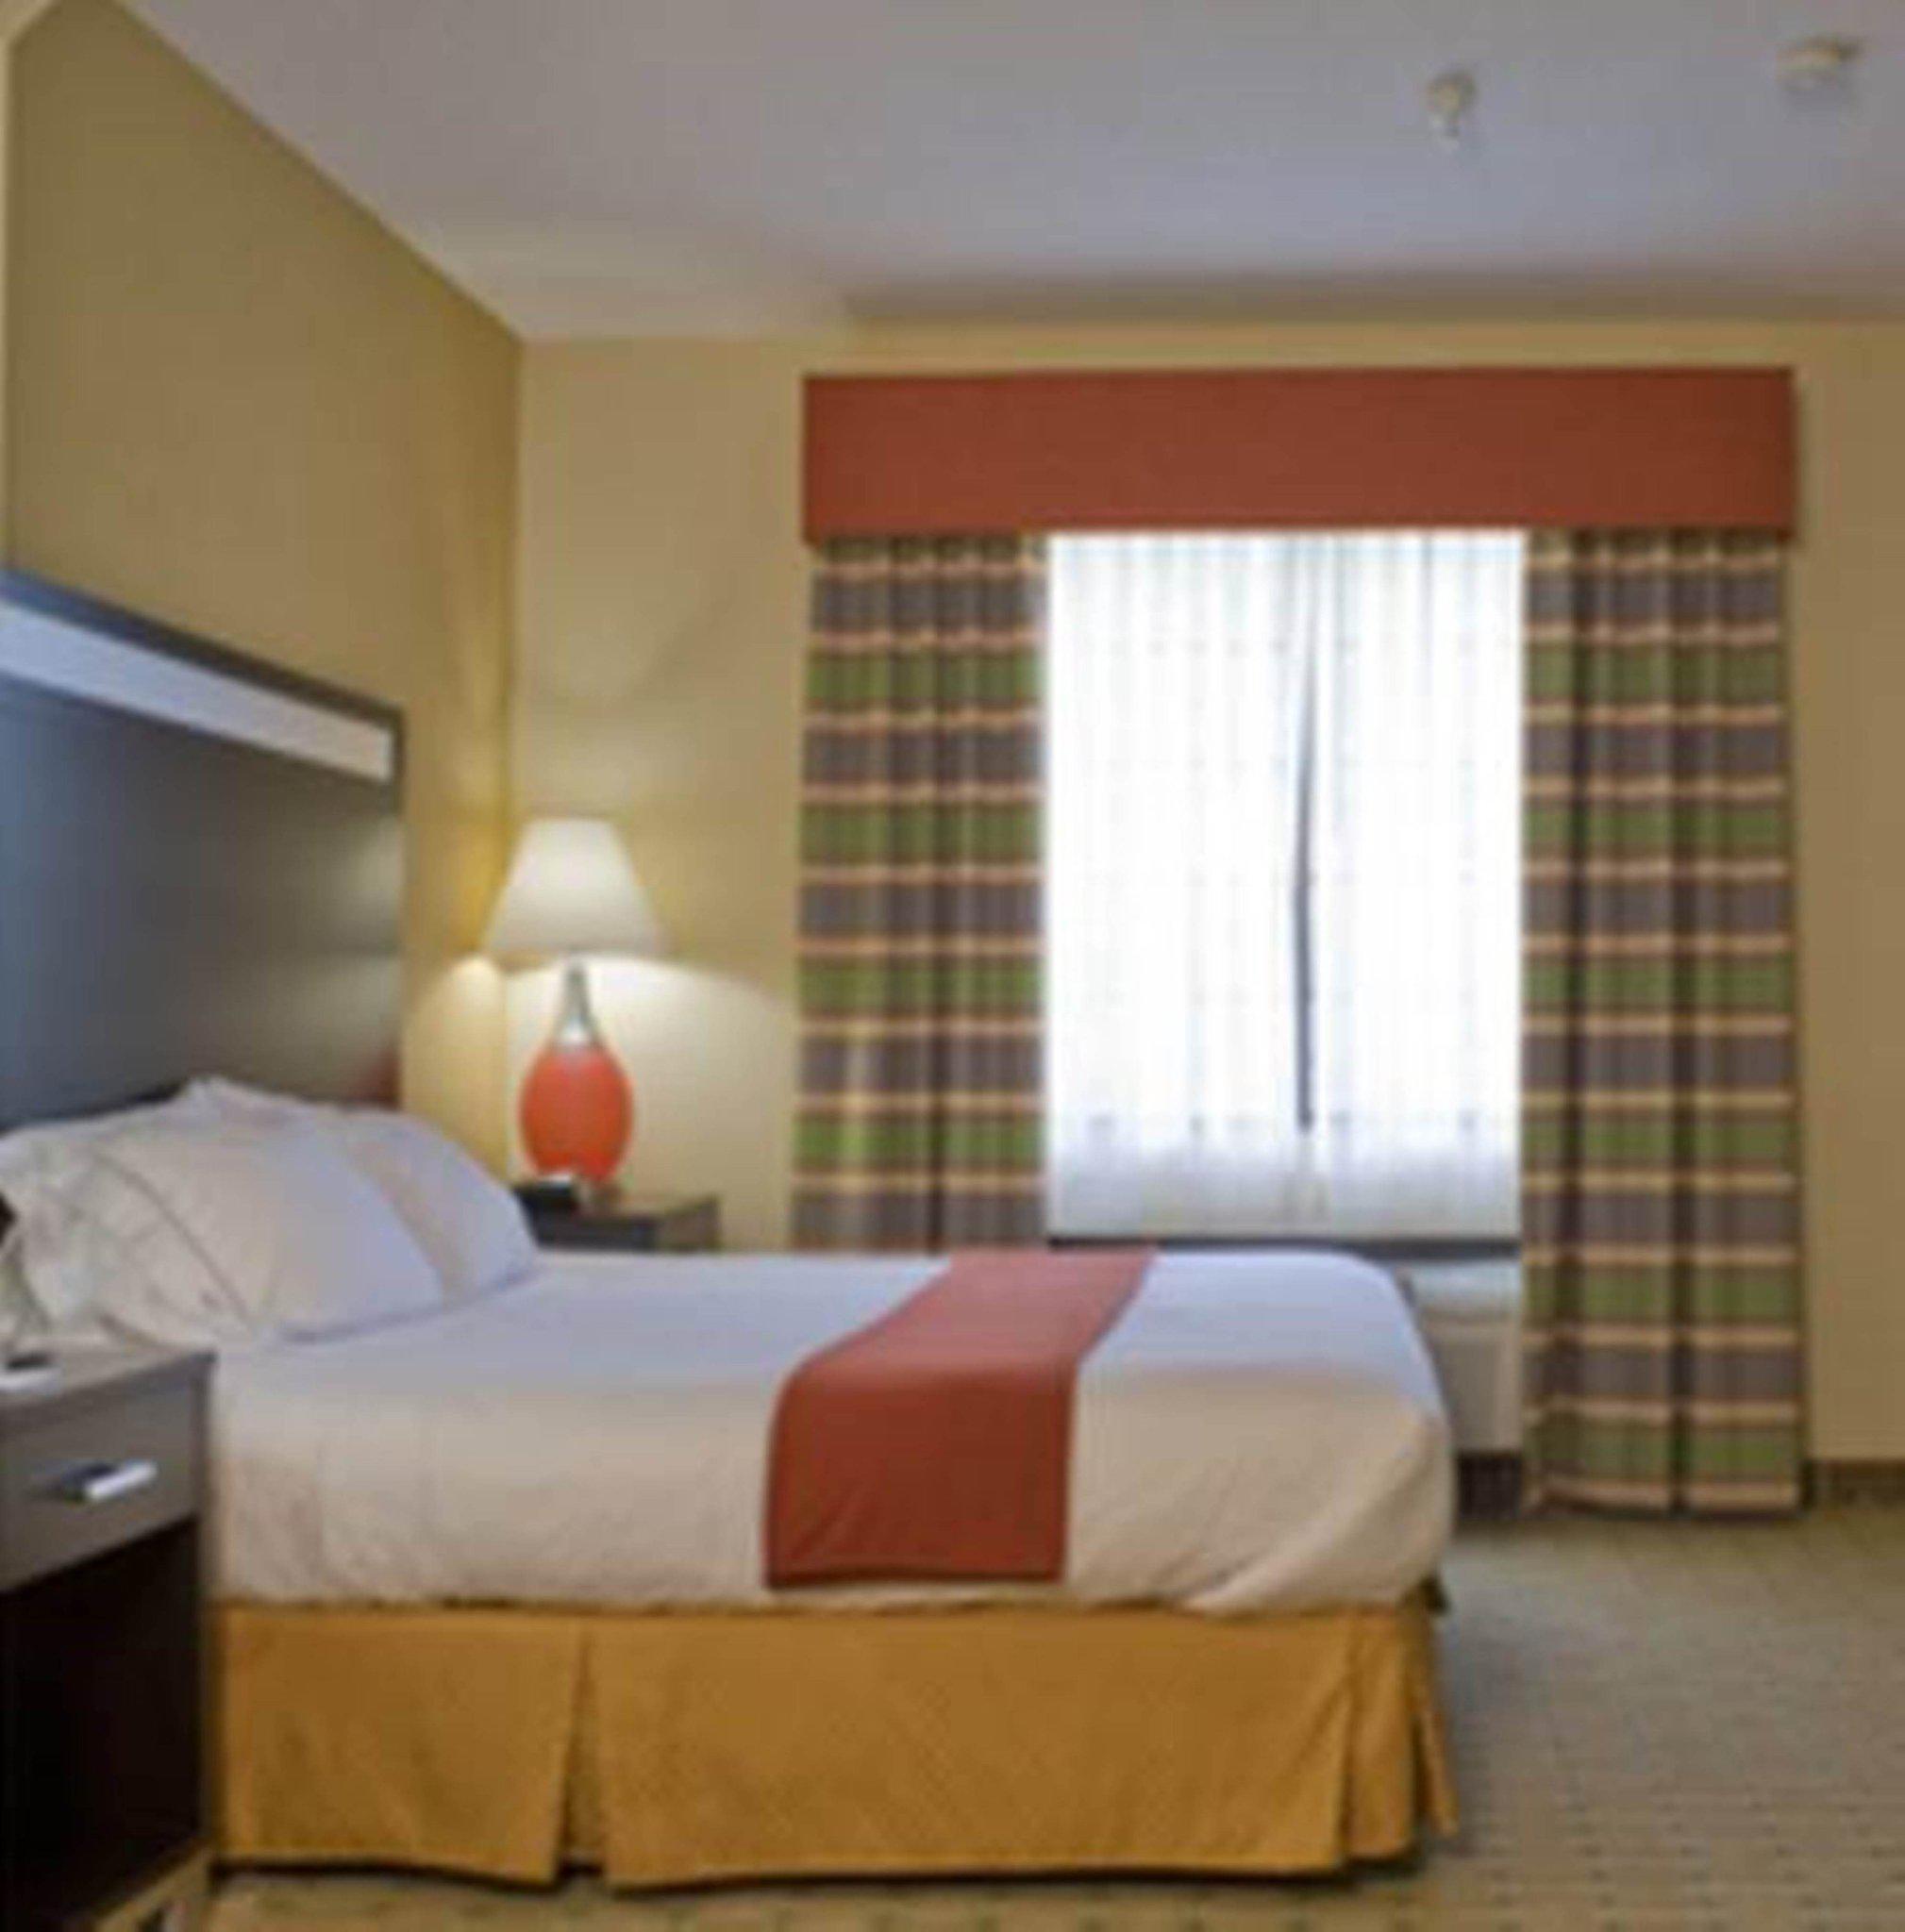 Holiday Inn Express & Suites Acworth - Kennesaw Northwest Photo